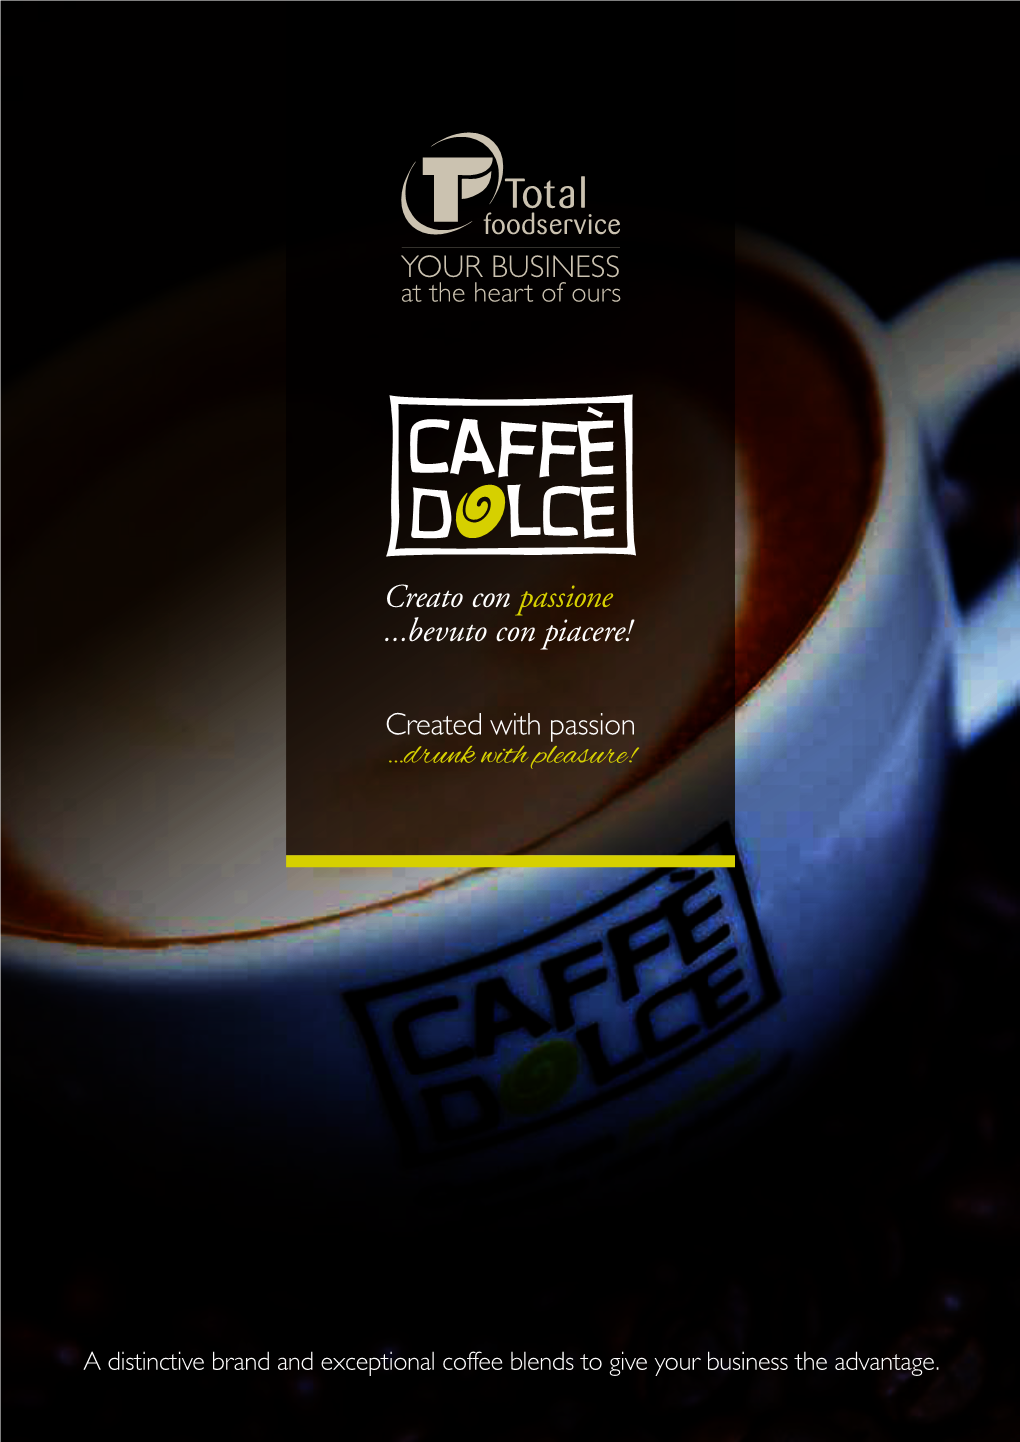 Total Foodservice's Caffe Dolce Range